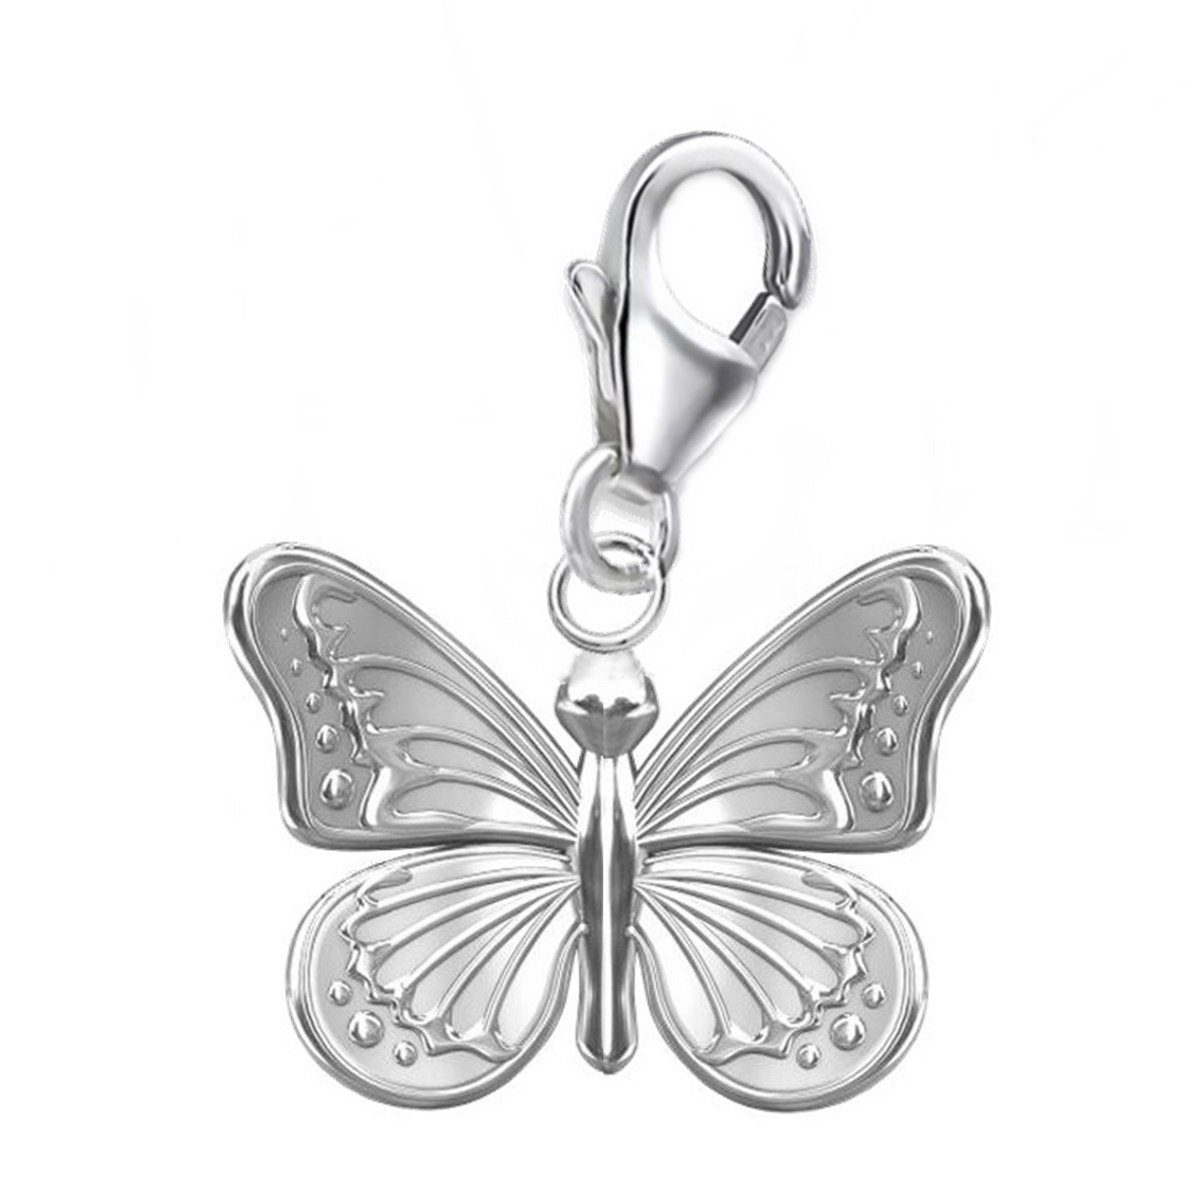 Goldene Hufeisen Charm Schmetterling Schmetterling Karabiner Charm Anhänger 925 Sterling-Silber (inkl. Etui), für Gliederarmband oder Halskette | Charm-Anhänger